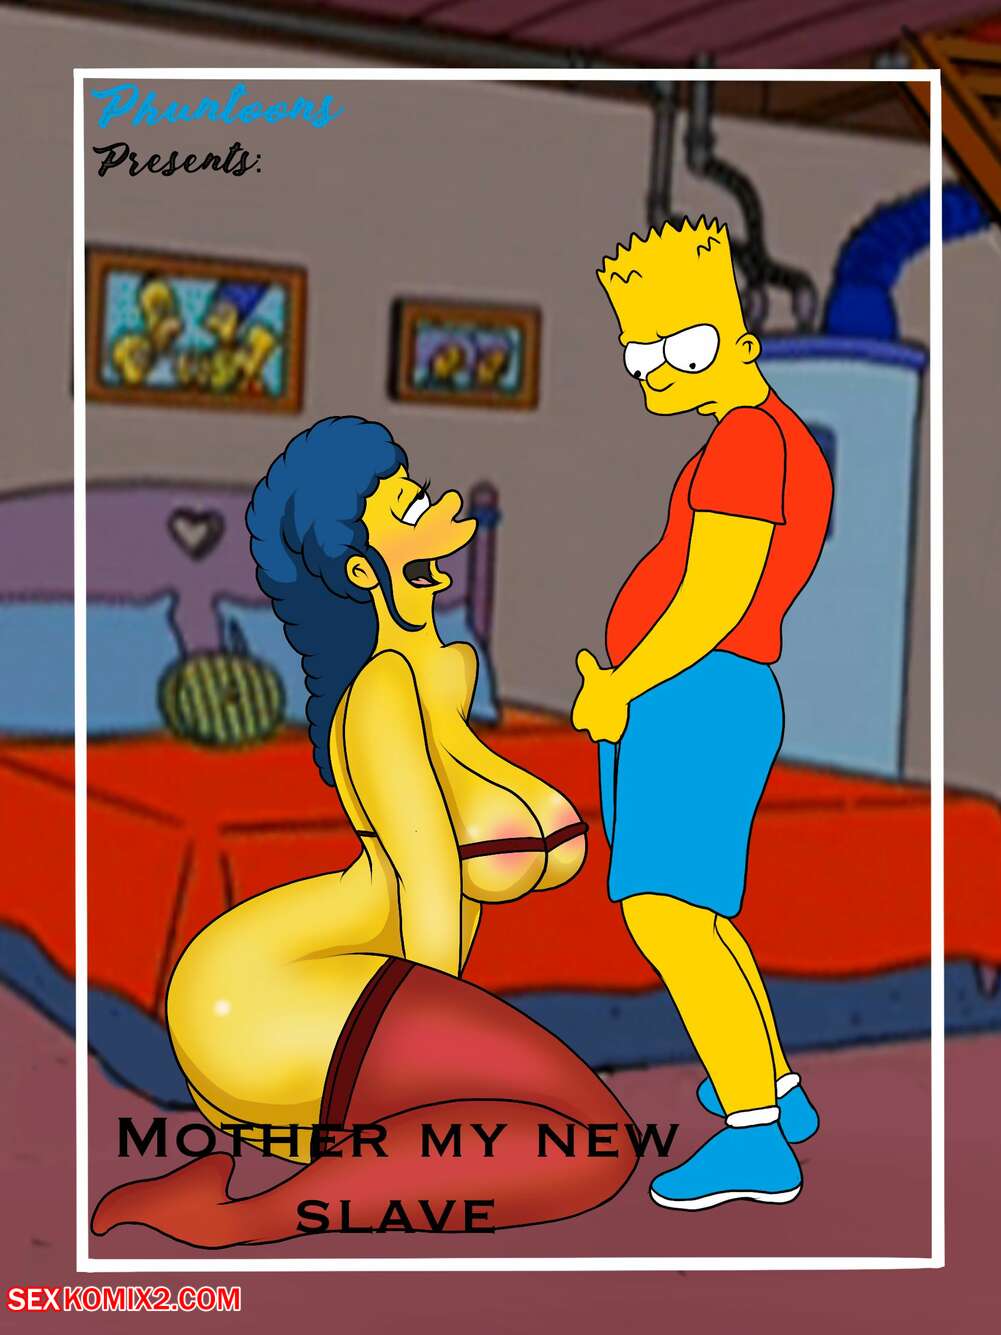 âœ…ï¸ Porn comic Mother My New Slave. Bobs200 Sex comic guy burned his | Porn  comics in English for adults only | sexkomix2.com